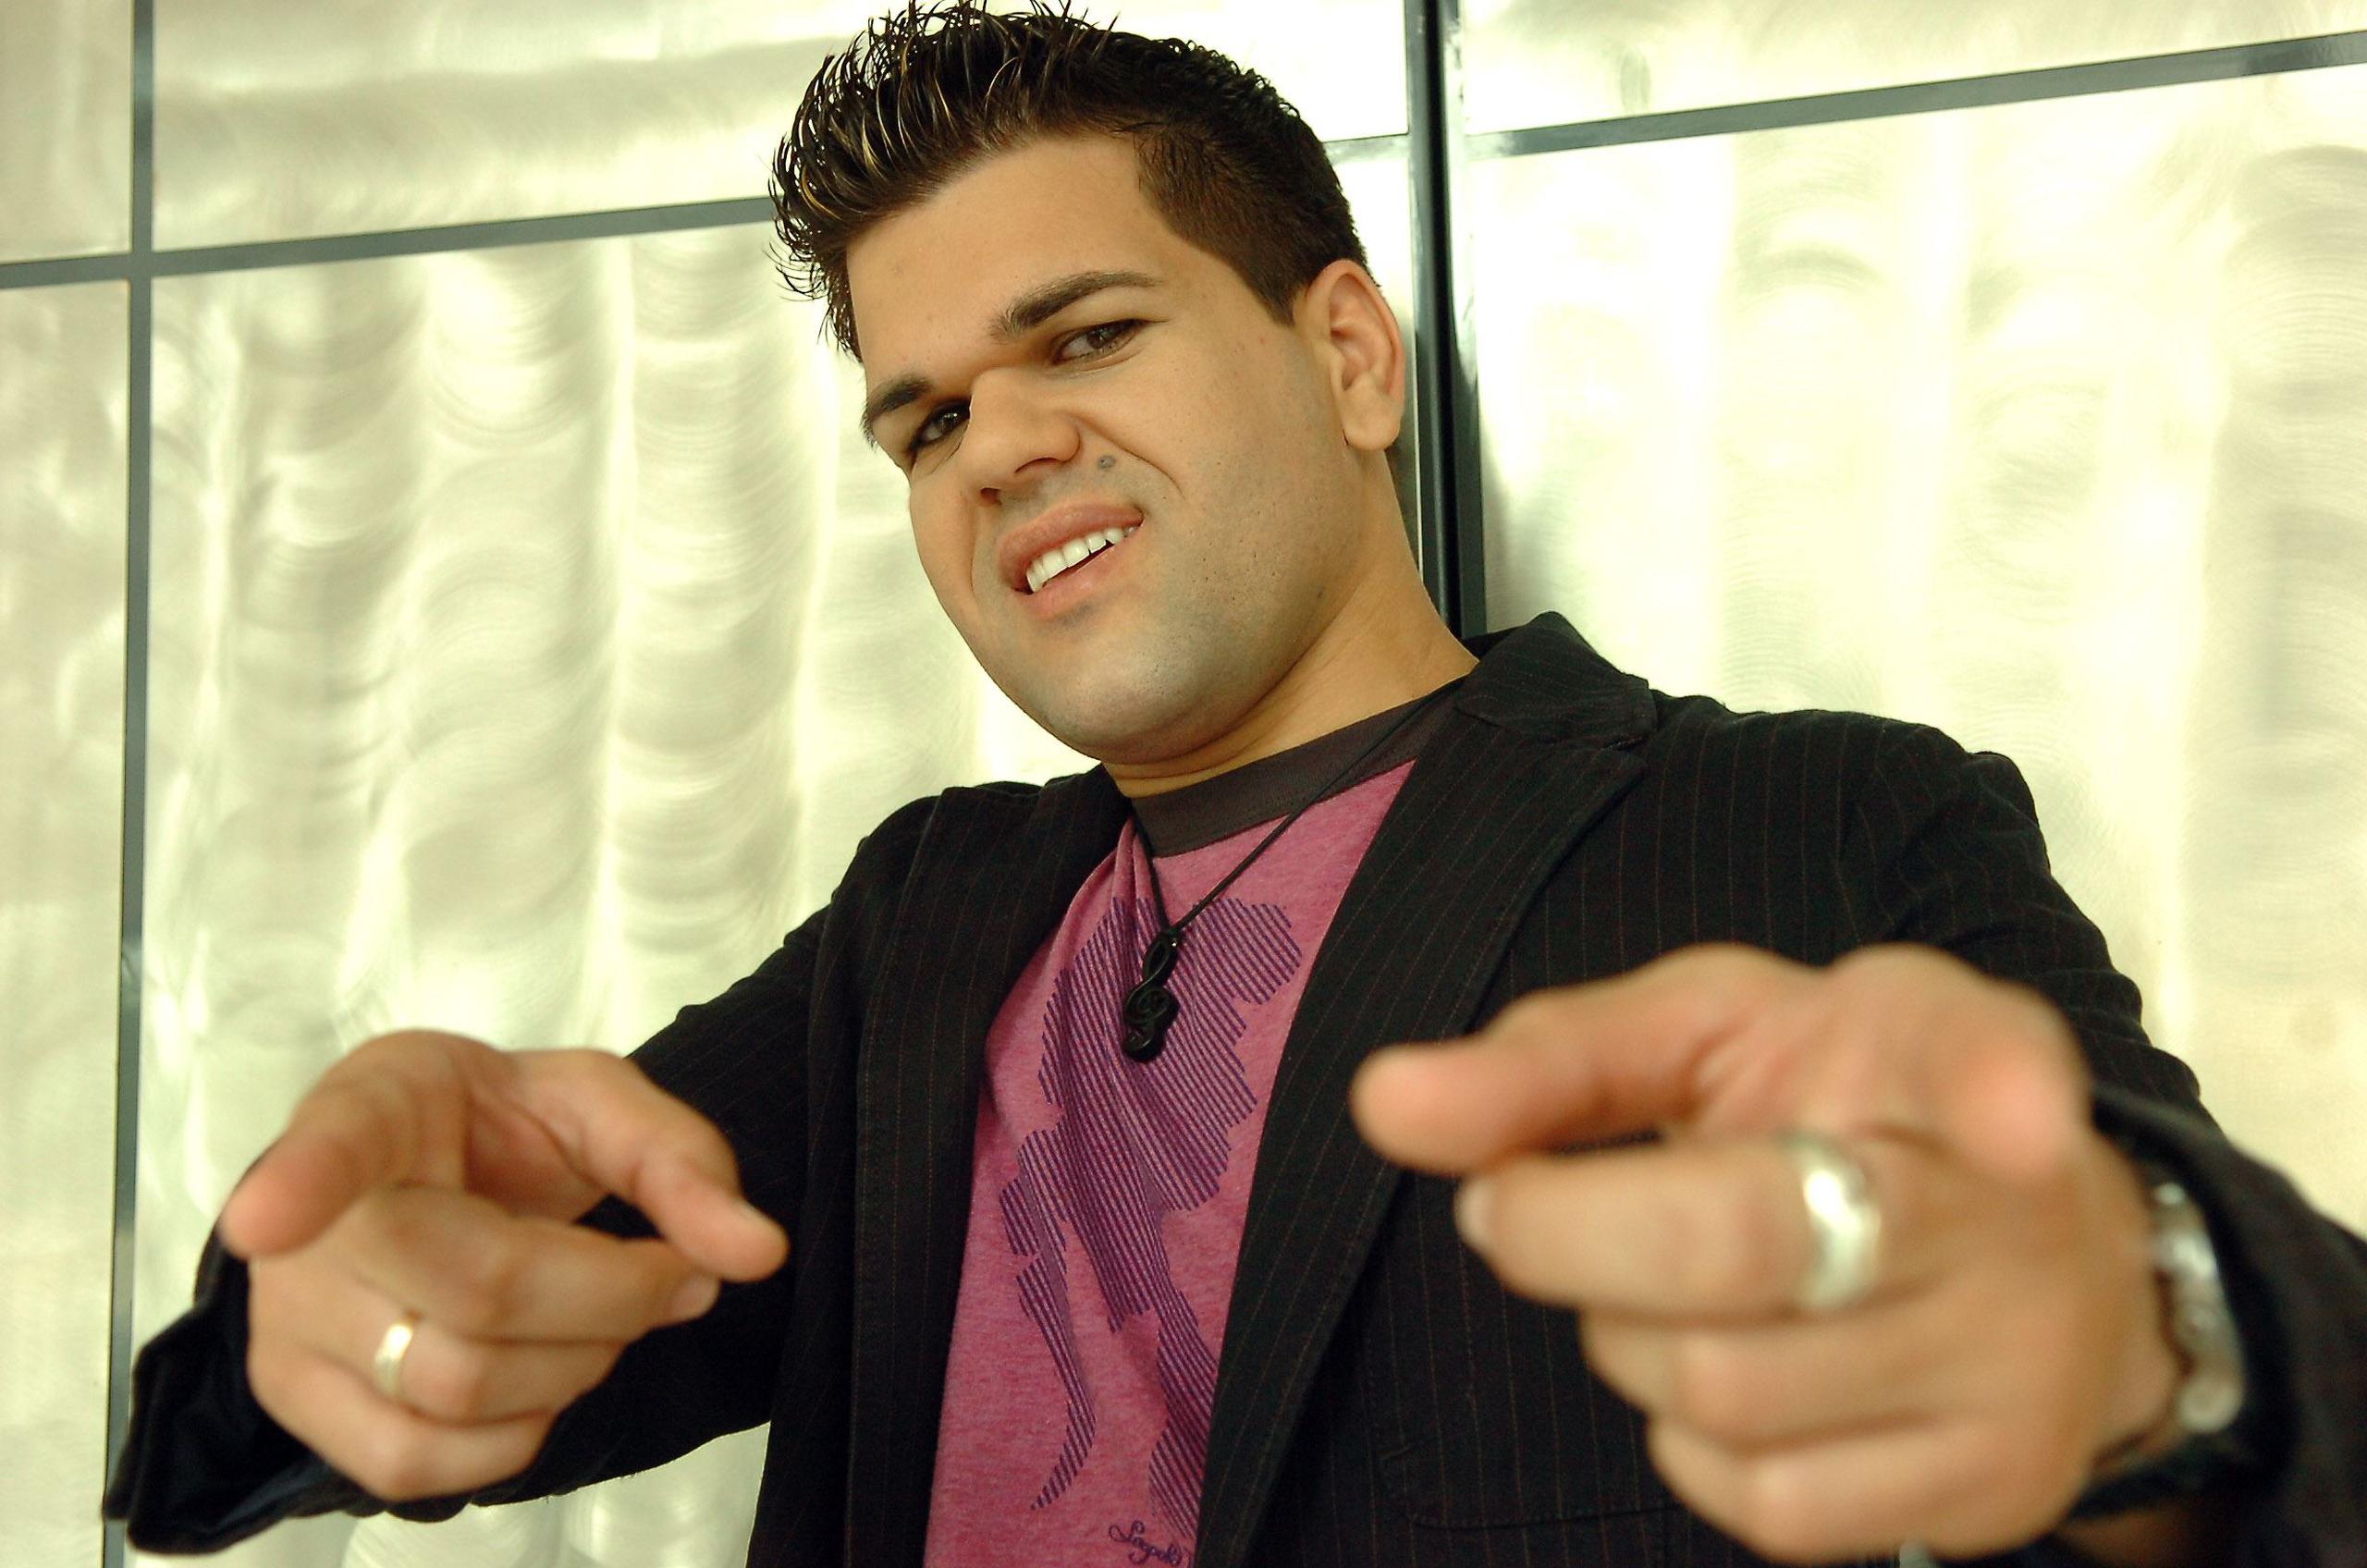 El cubano Marlon Fernández conquistó a la audiencia en la tercera temporada del “reality show”, en 2006. (GFR Media)